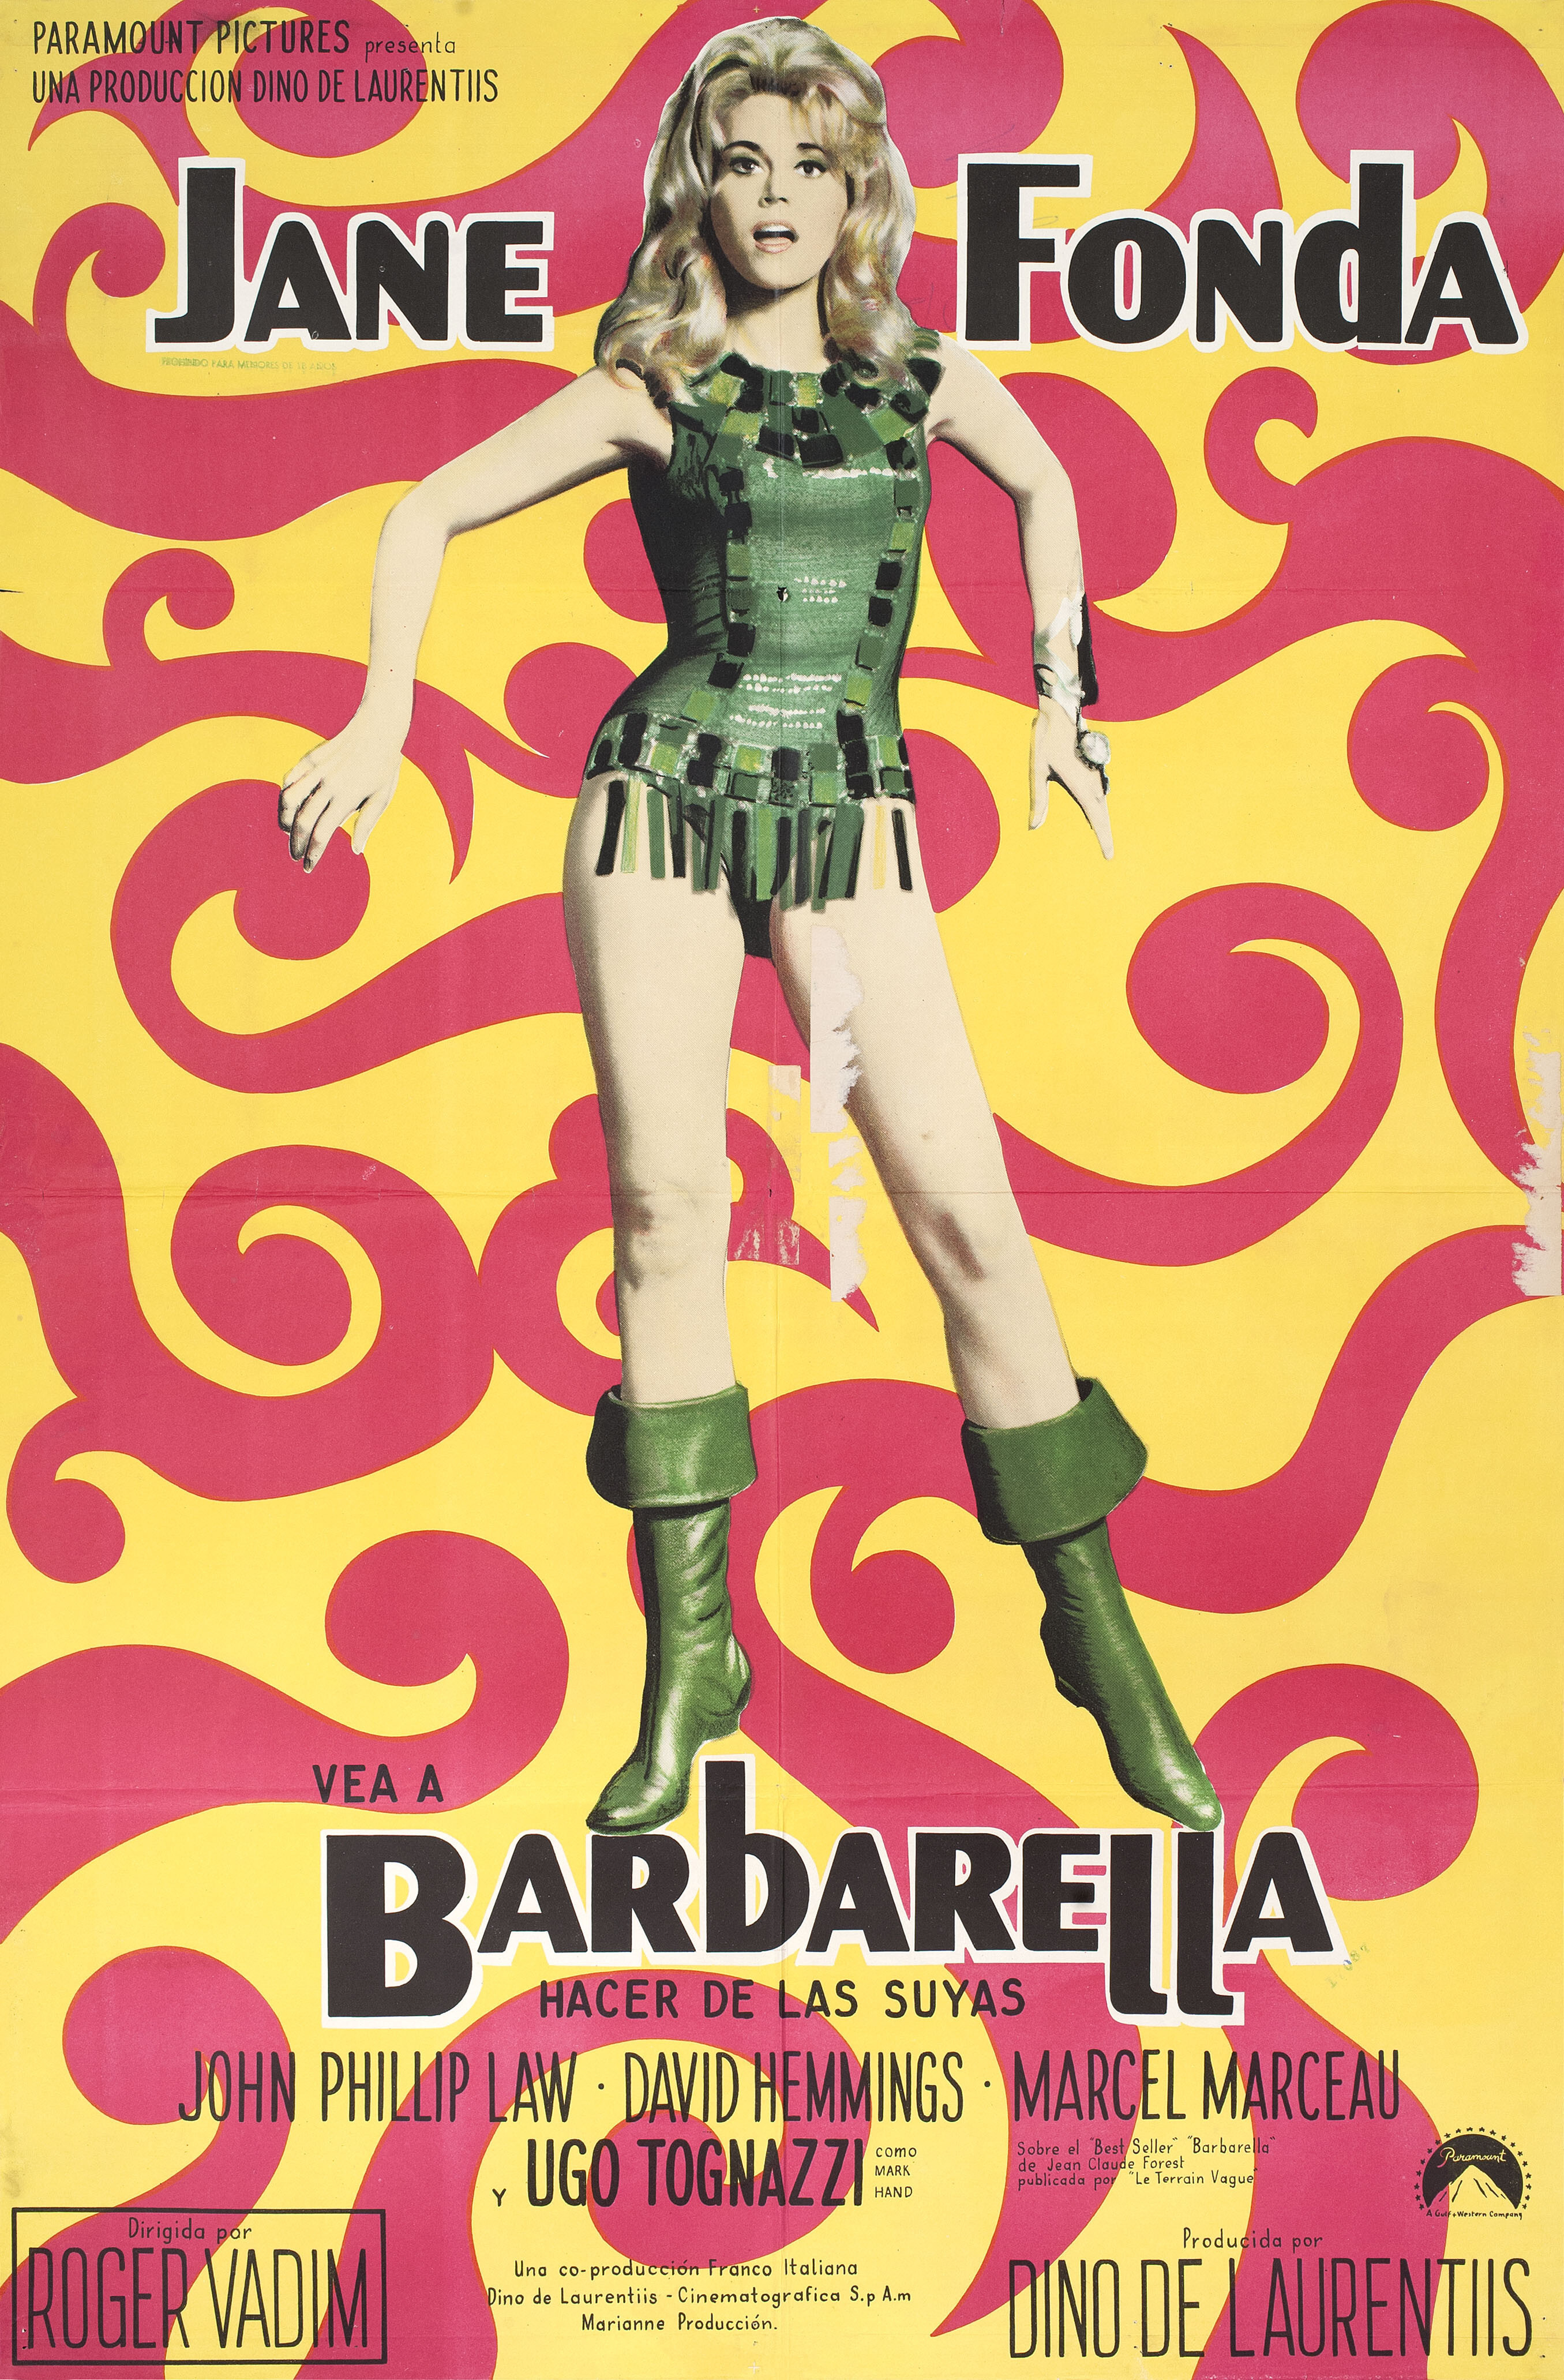 Барбарелла (Barbarella, 1968), режиссёр Роджер Вадим, аргентинский постер к фильму (психоделическое искусство, 1968 год)